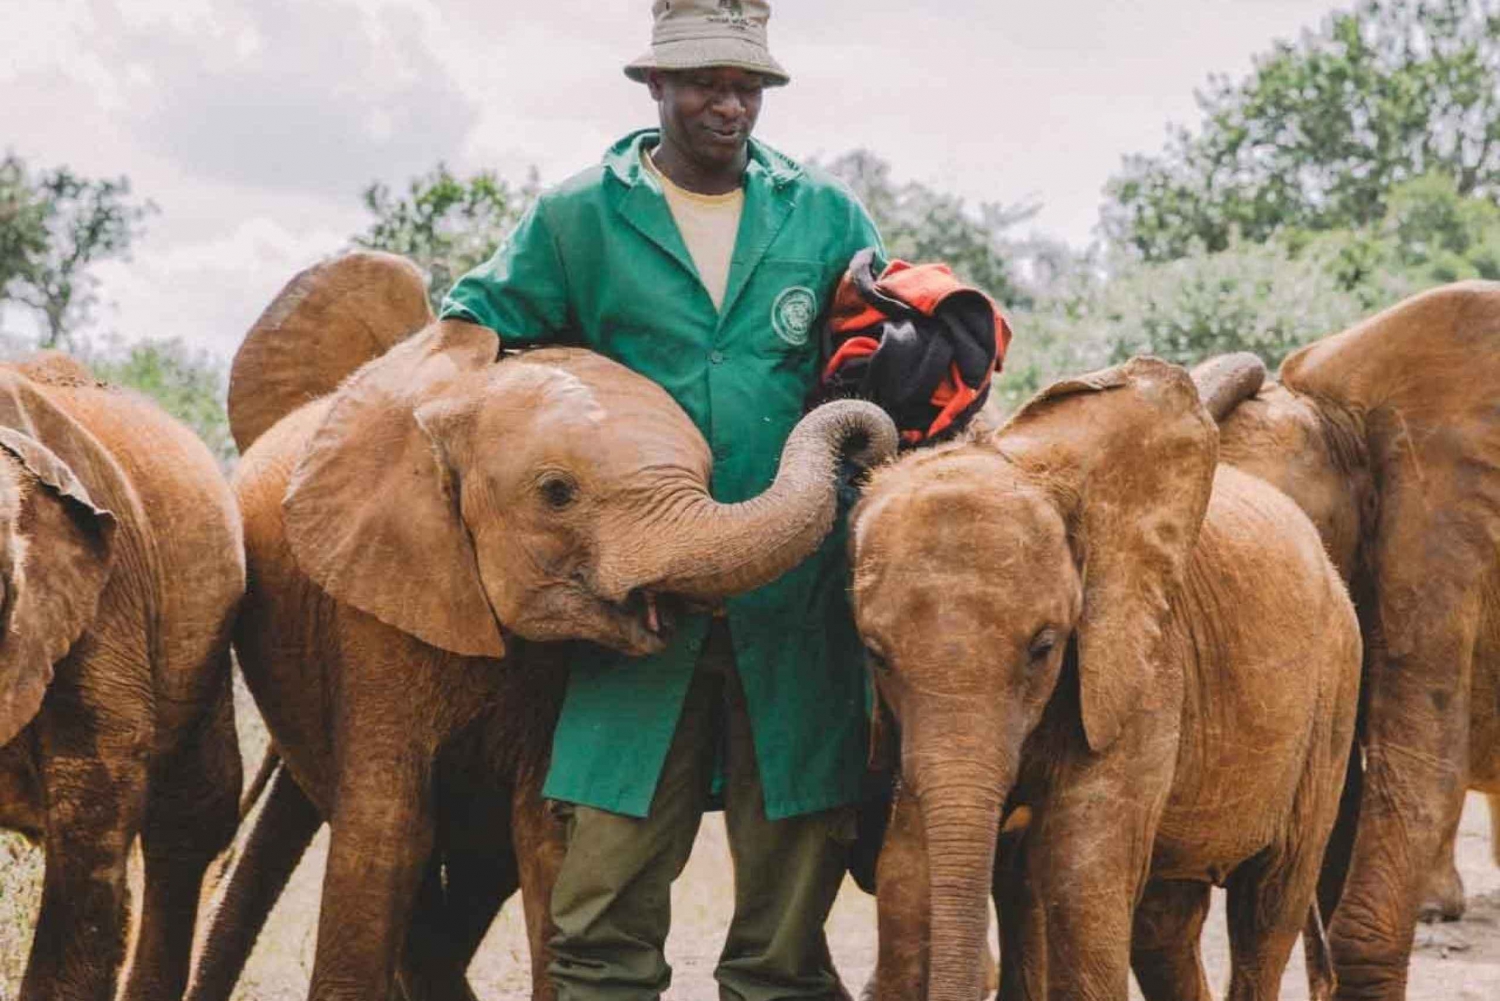 Nairóbi: Excursão de um dia ao Orfanato de Elefantes, Girafas e Bomas